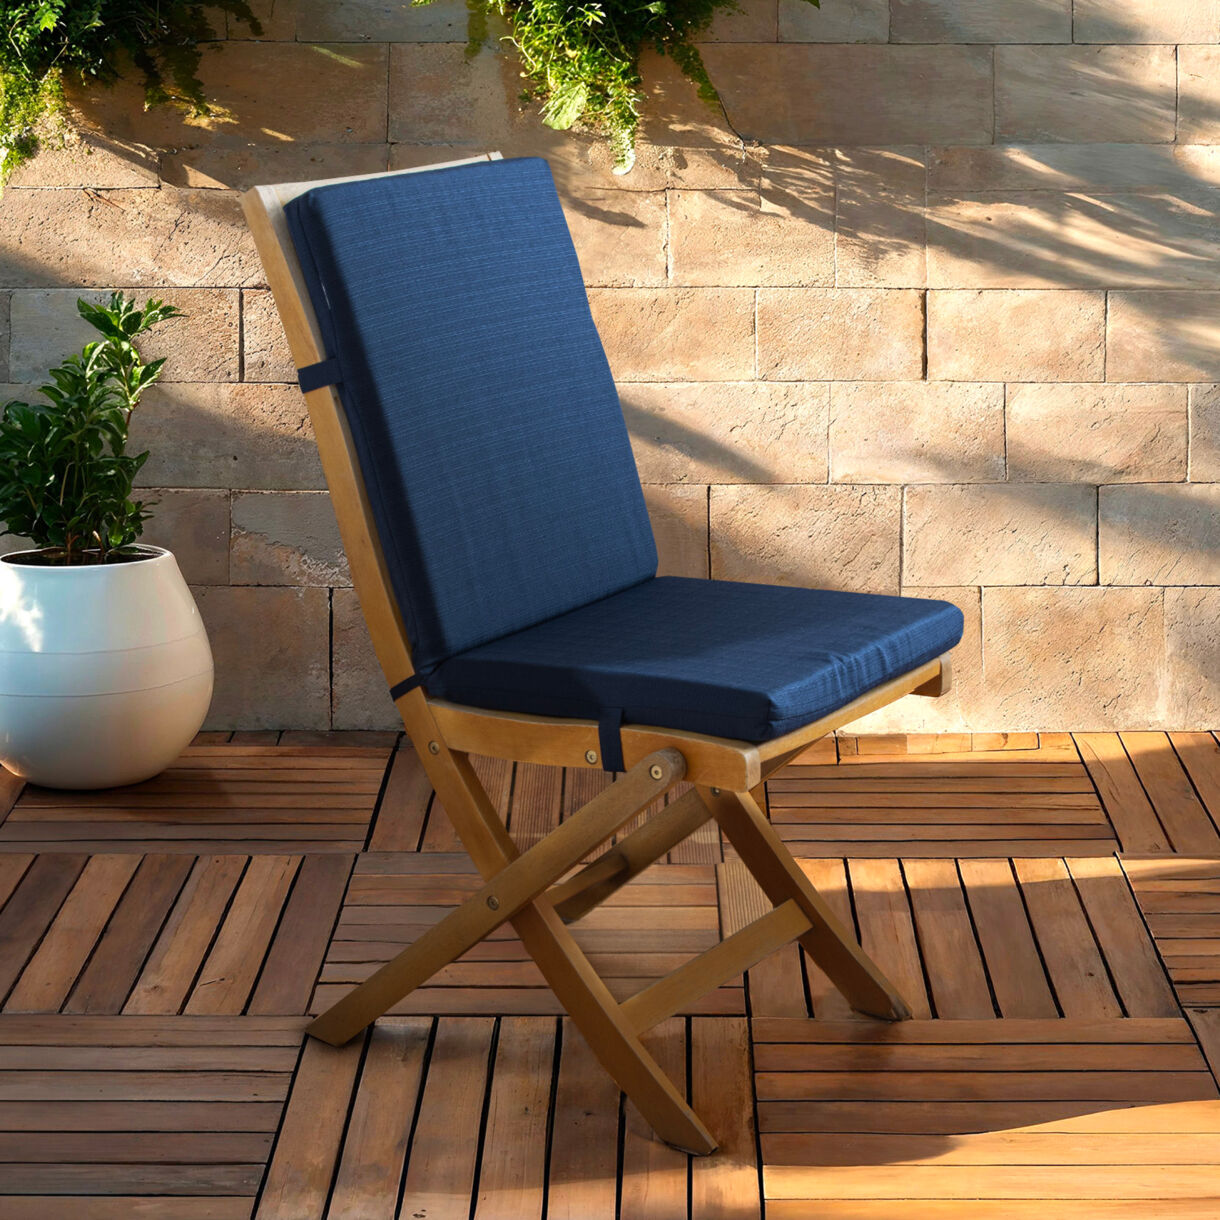 EM - Coussin de chaise dŽhoussable avec dossier 90 x 40 cm Polyester uni SUNSET Bleu nuit